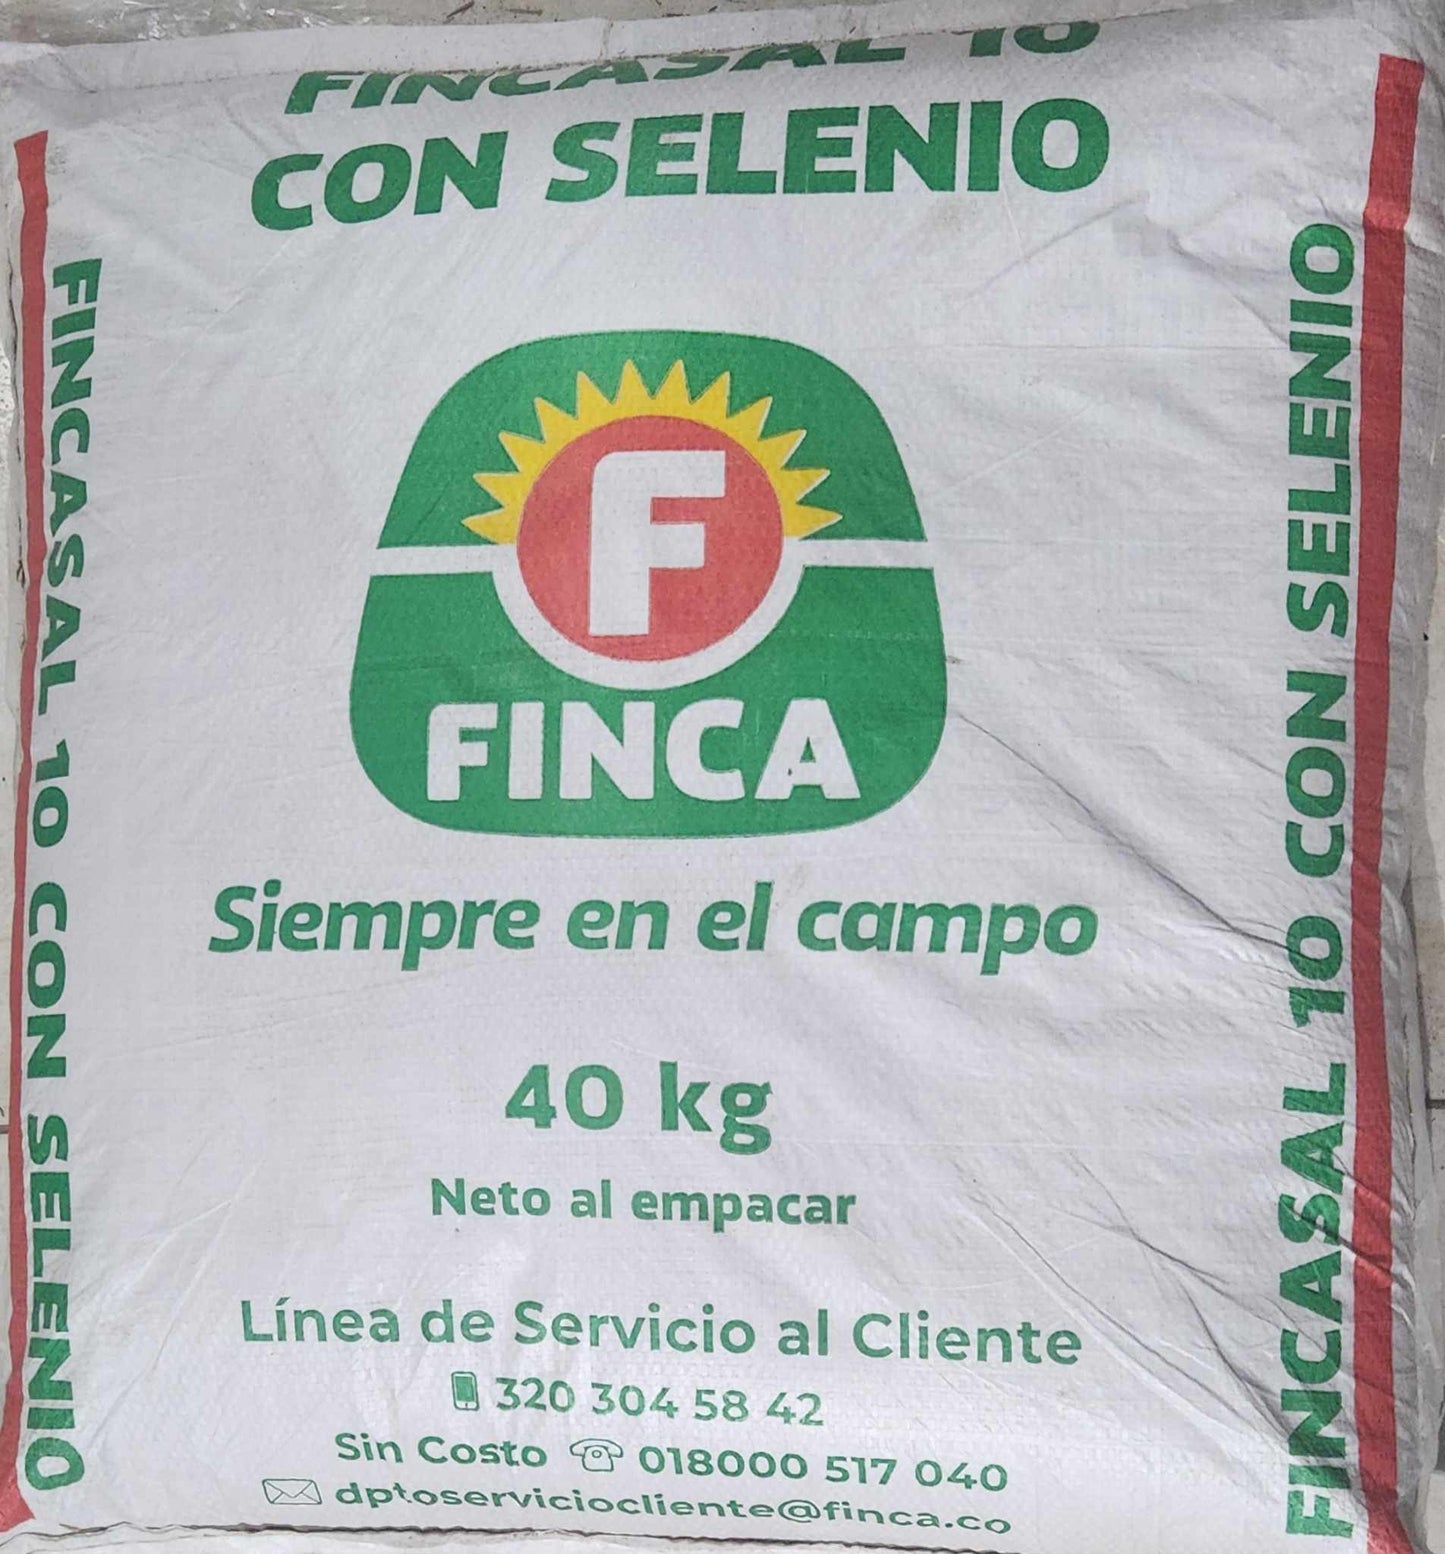 FINCA SAL 10 CON SELENIO H